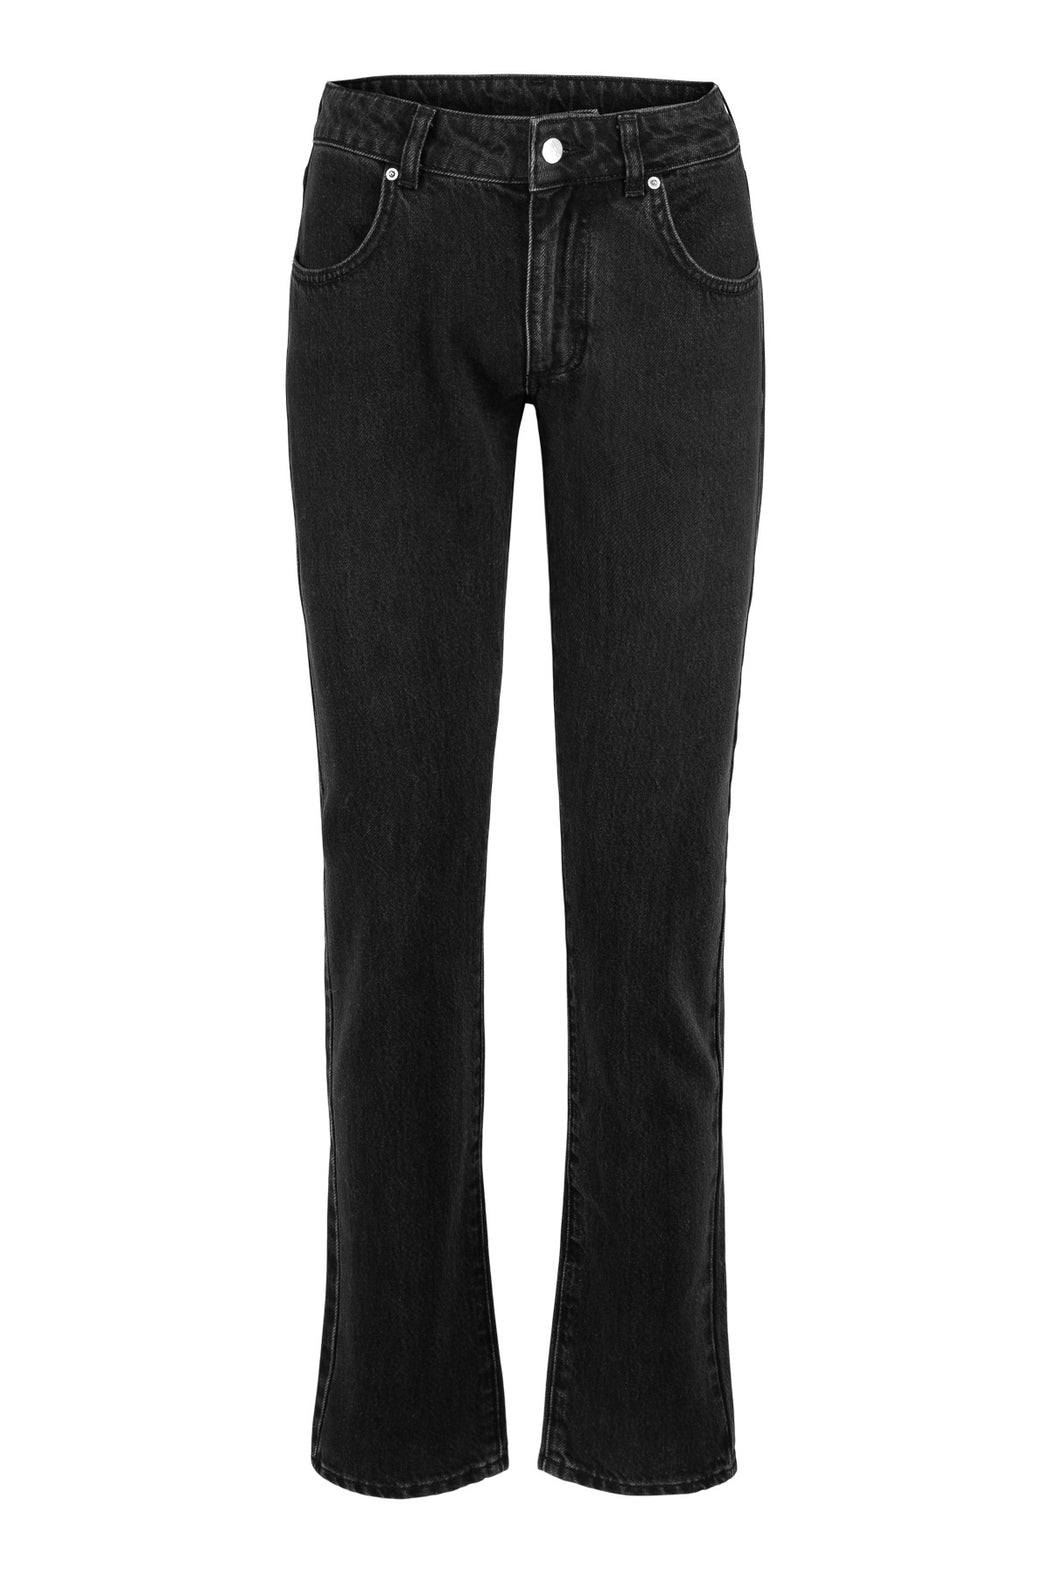 Envelope1976 Aarons pant - Organic cotton Pants Washed black